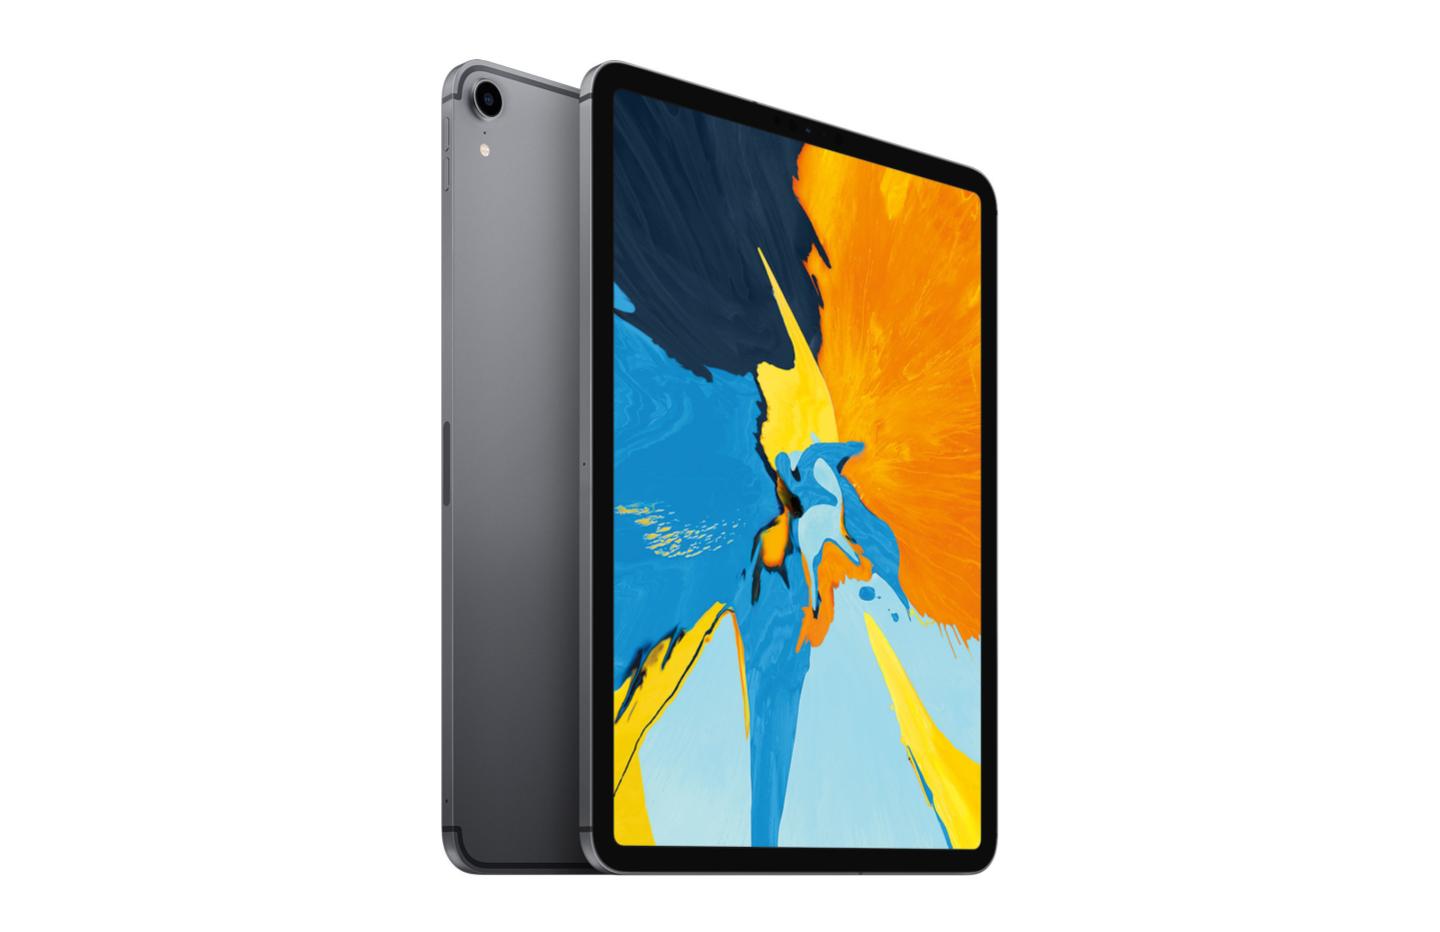 L'iPad Pro 11 (2018) 1 To chute presque au même prix que le modèle 256 Go -  Numerama